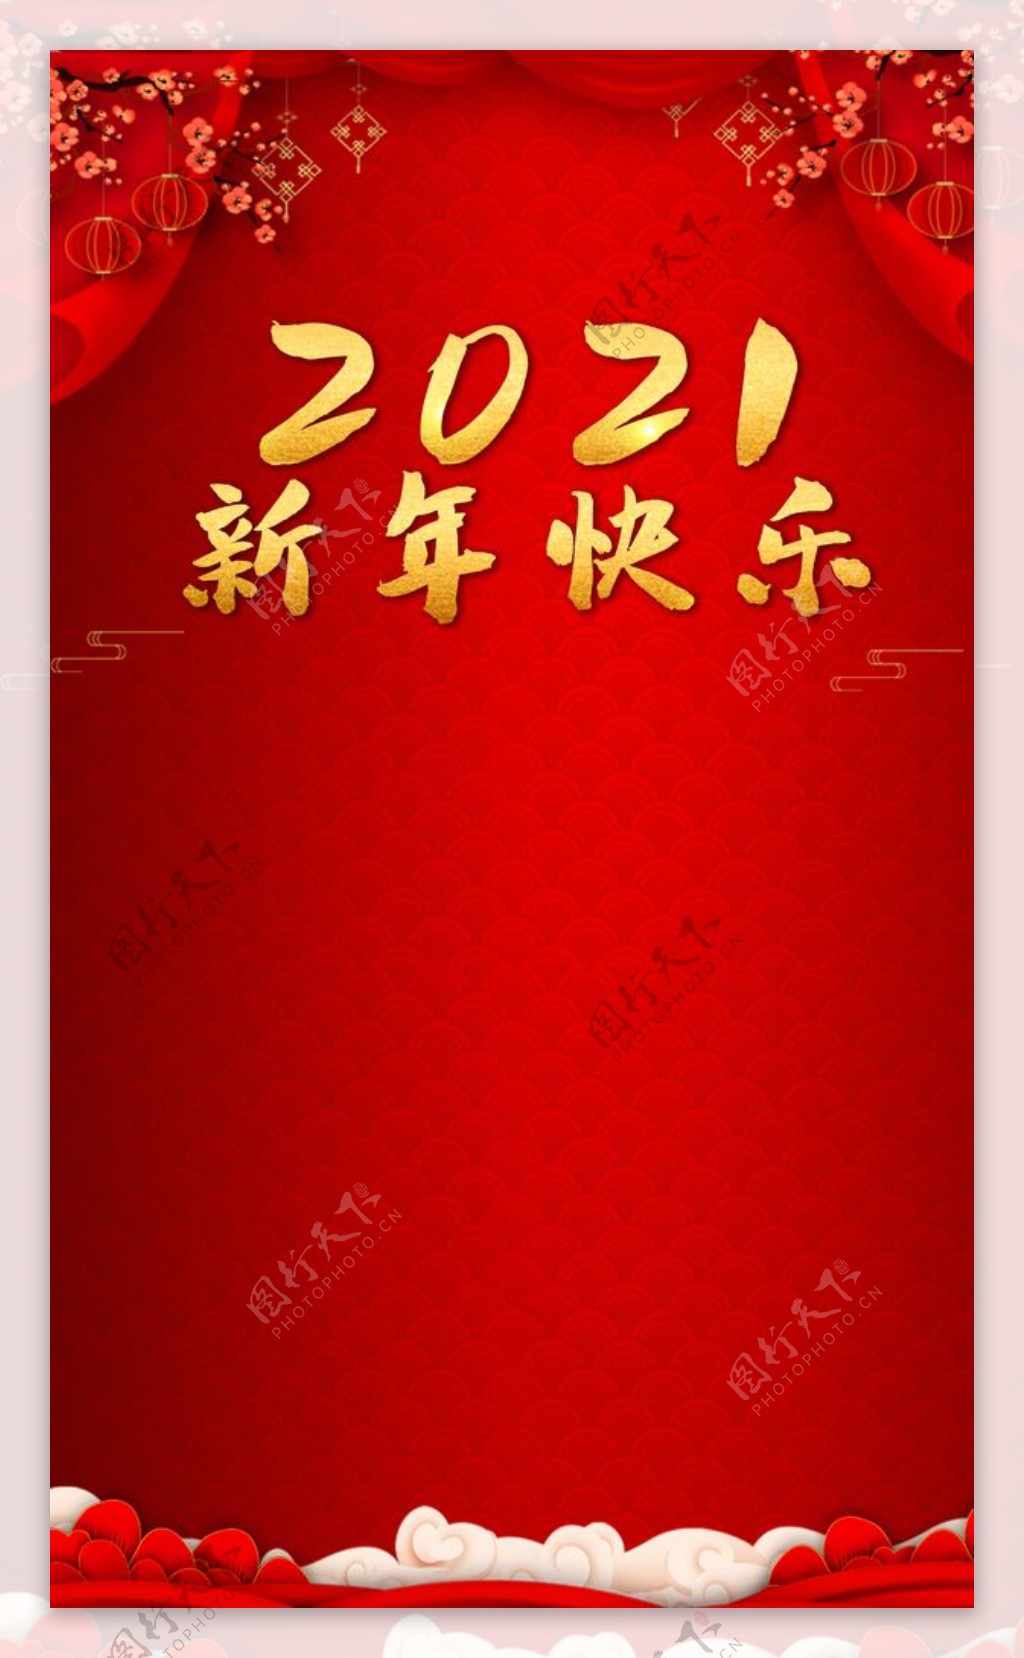 2021新年快乐红色背景图片